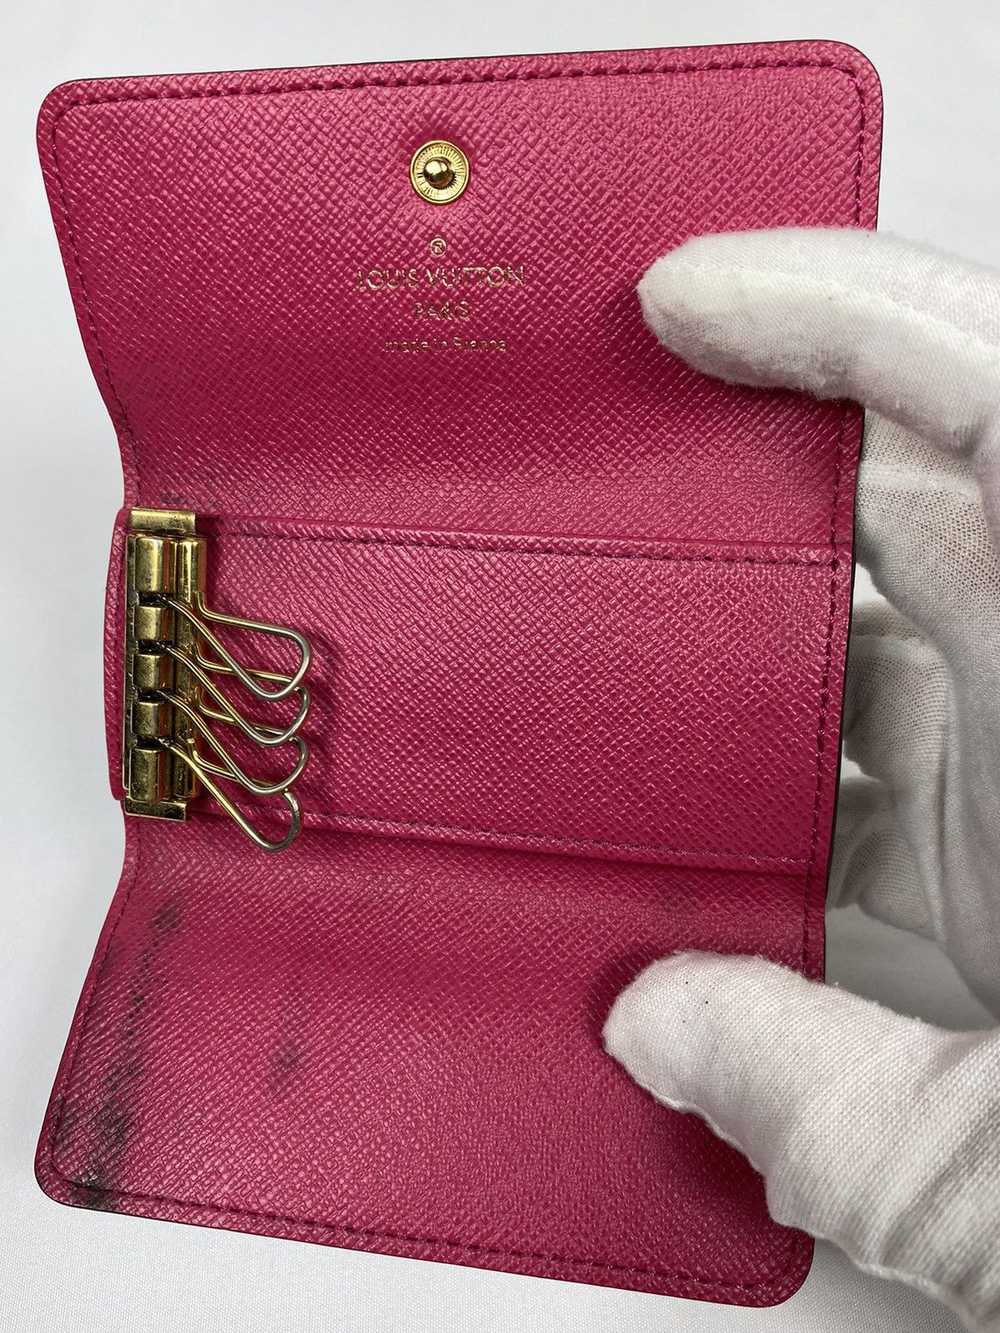 Louis Vuitton Monogram Key Holder - image 3